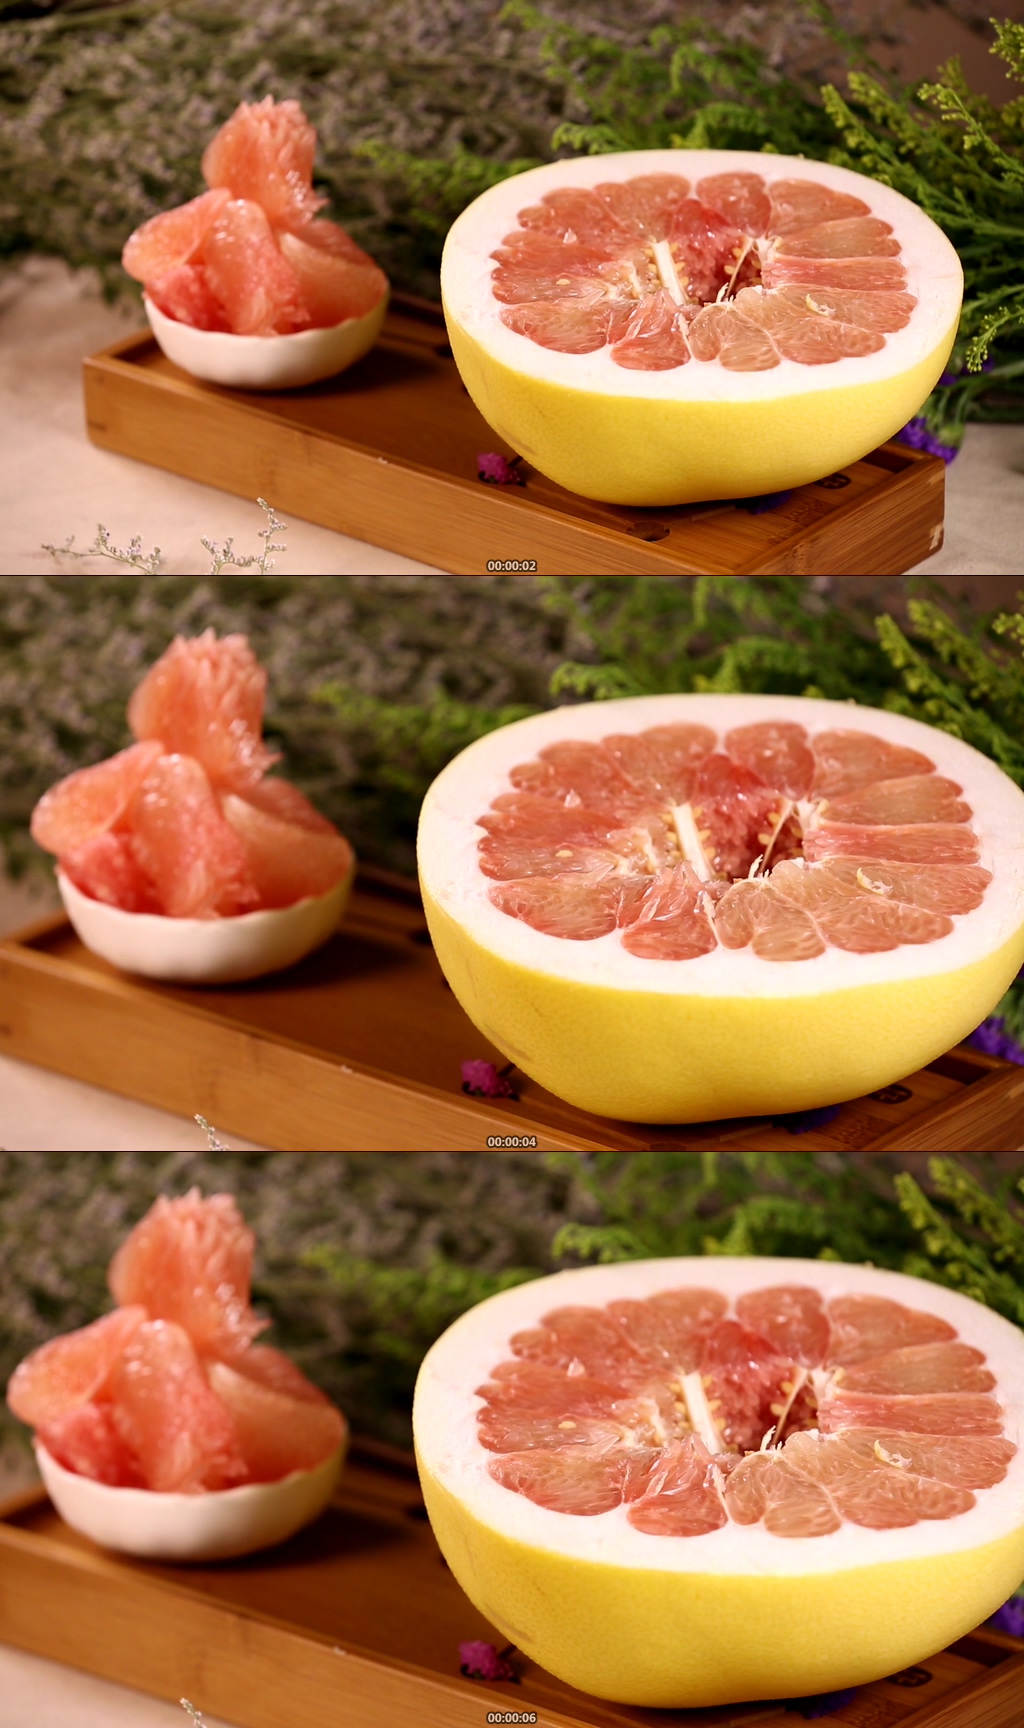 葡萄柚红心柚实拍素材免费下载,本作品是由stacey上传的原创视频素材